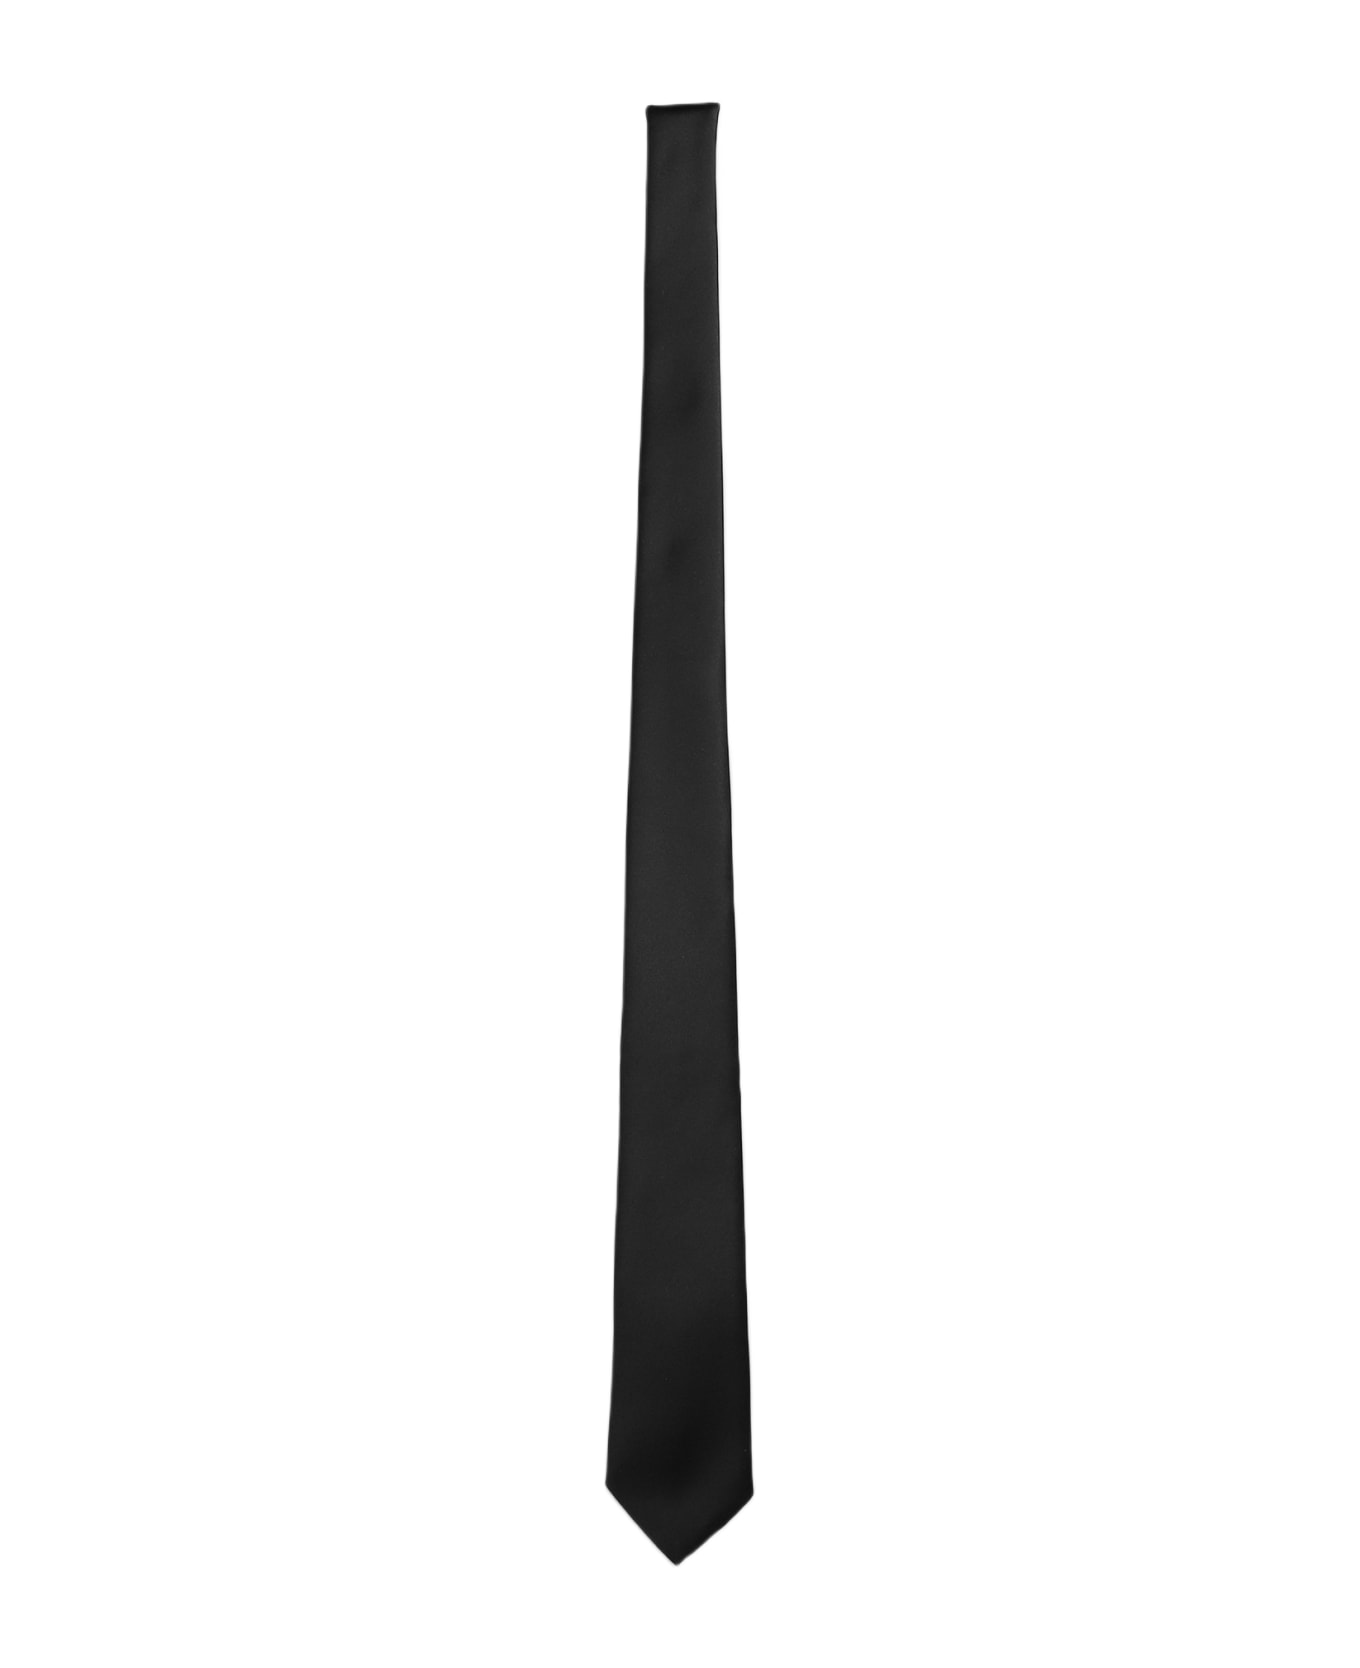 Tagliatore 0205 Tie In Black Polyester - black